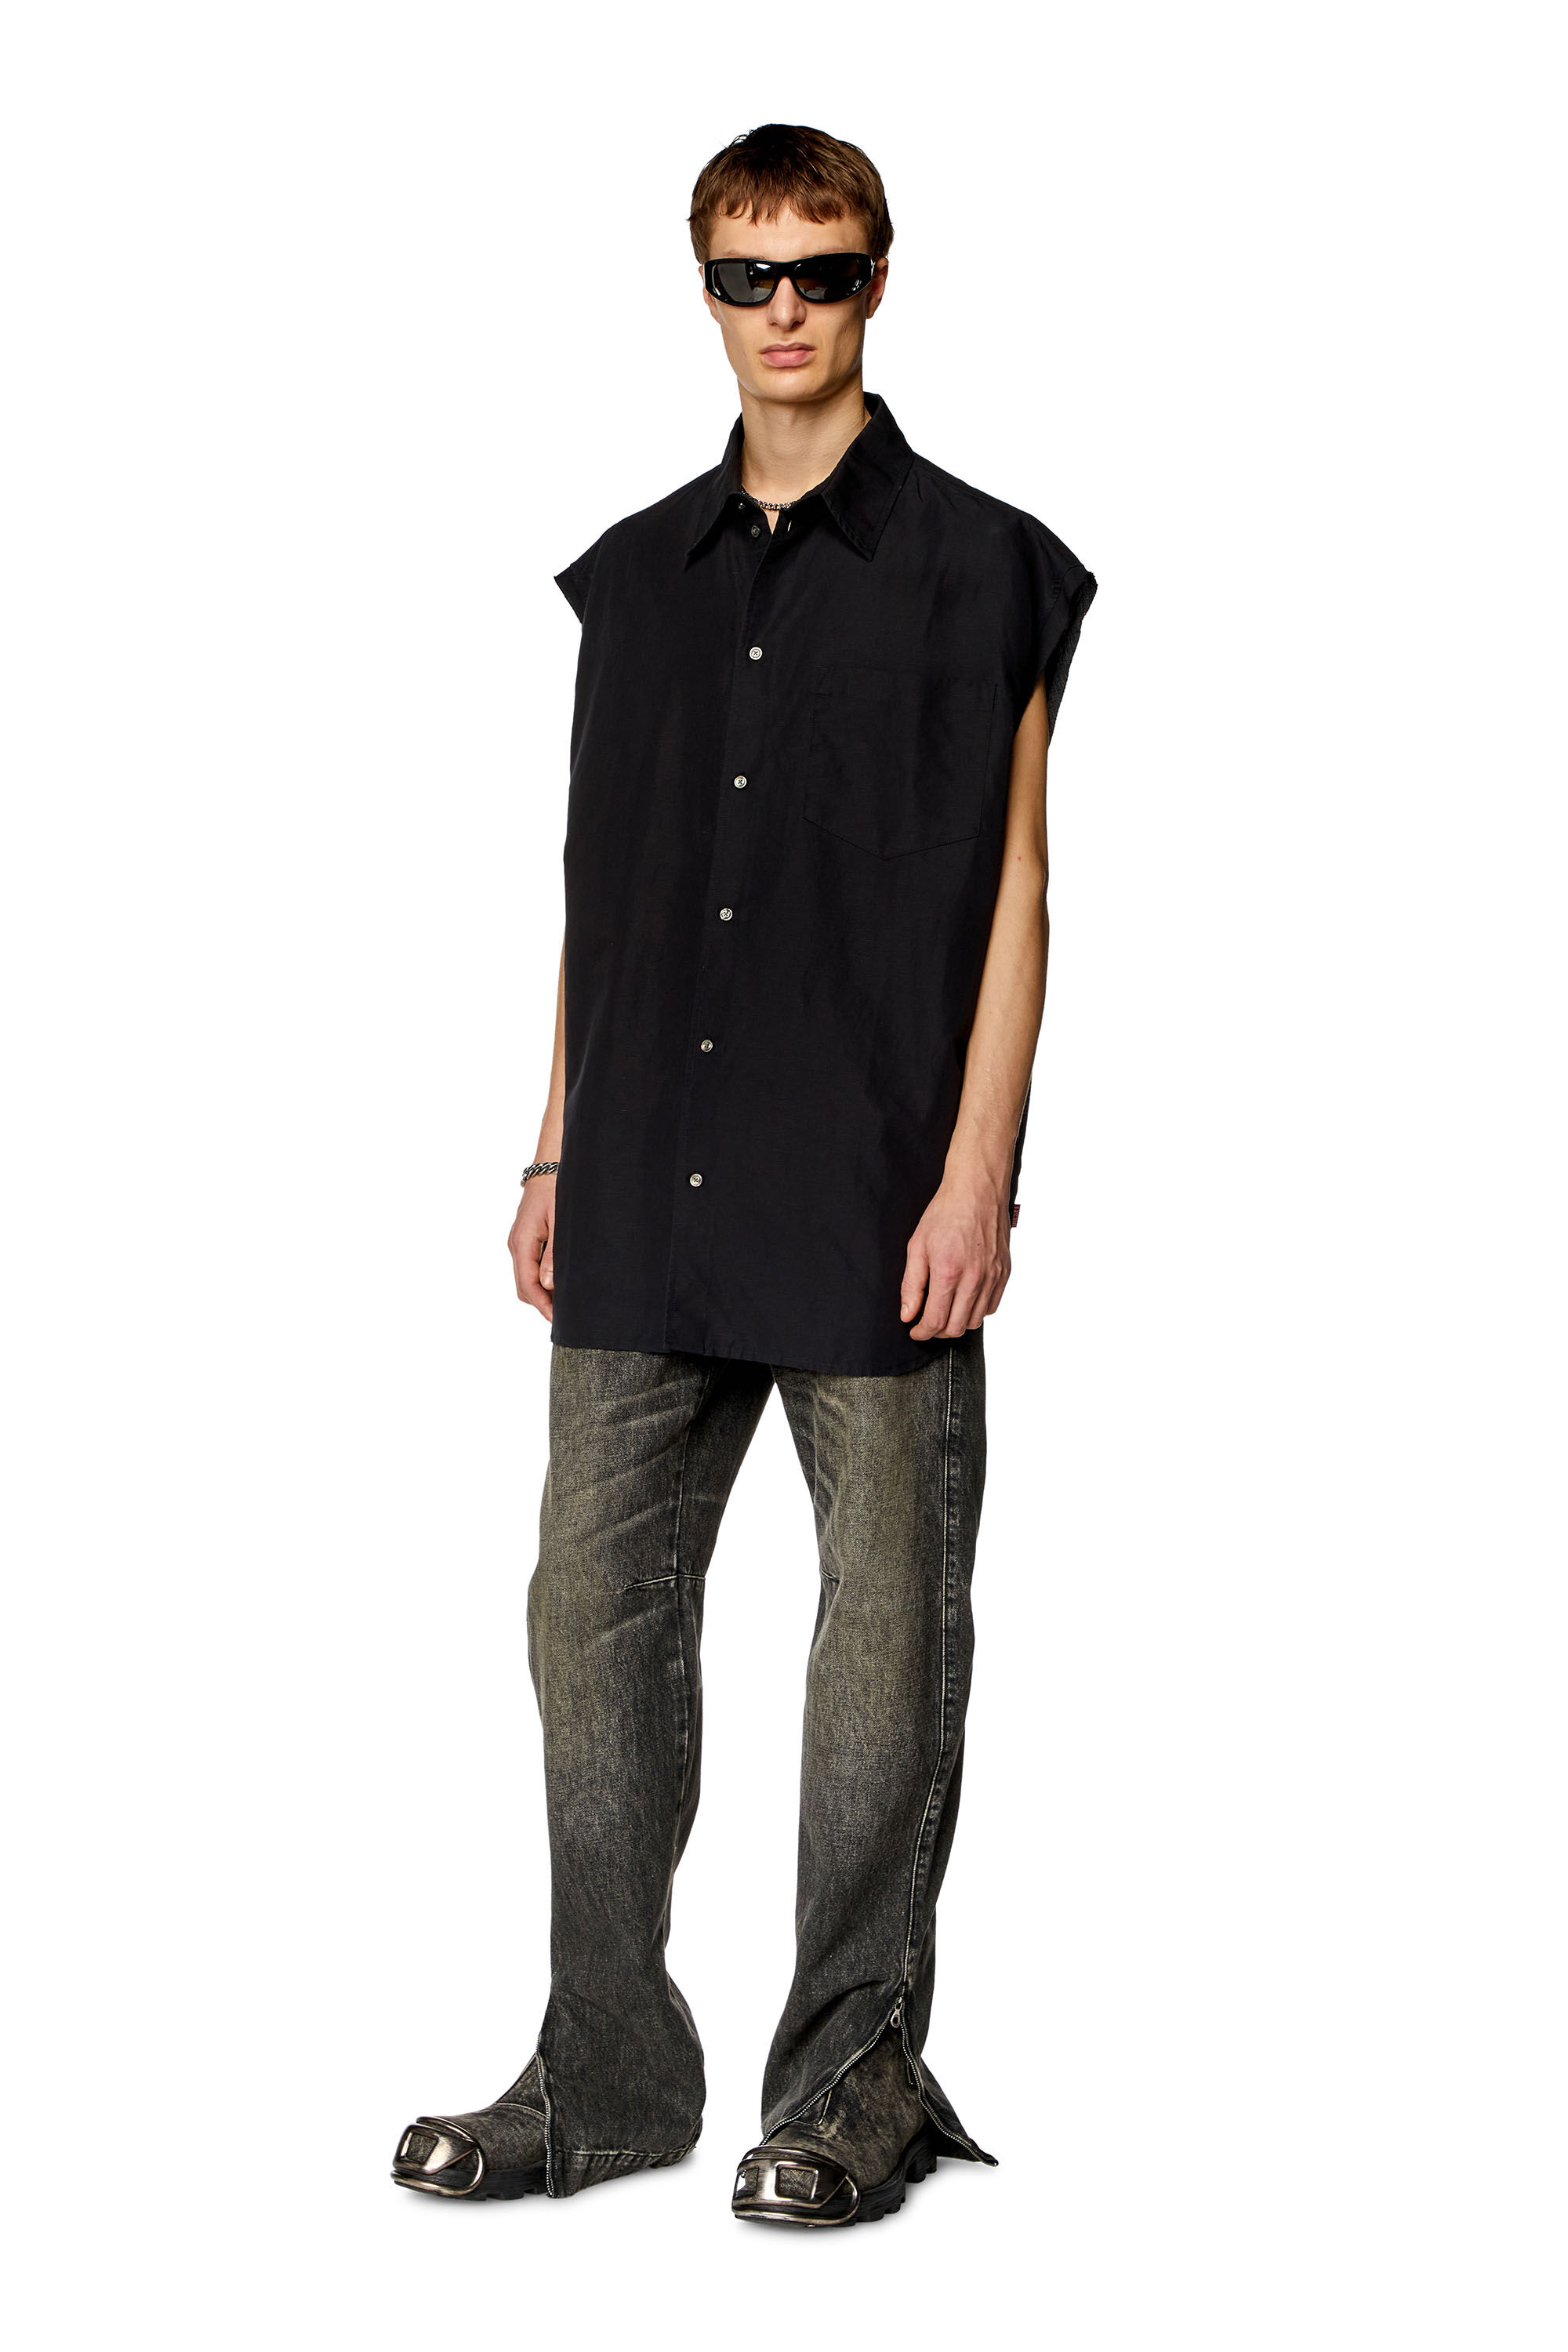 Diesel - S-SIMENS, Man Sleeveless shirt in linen blend in Black - Image 1